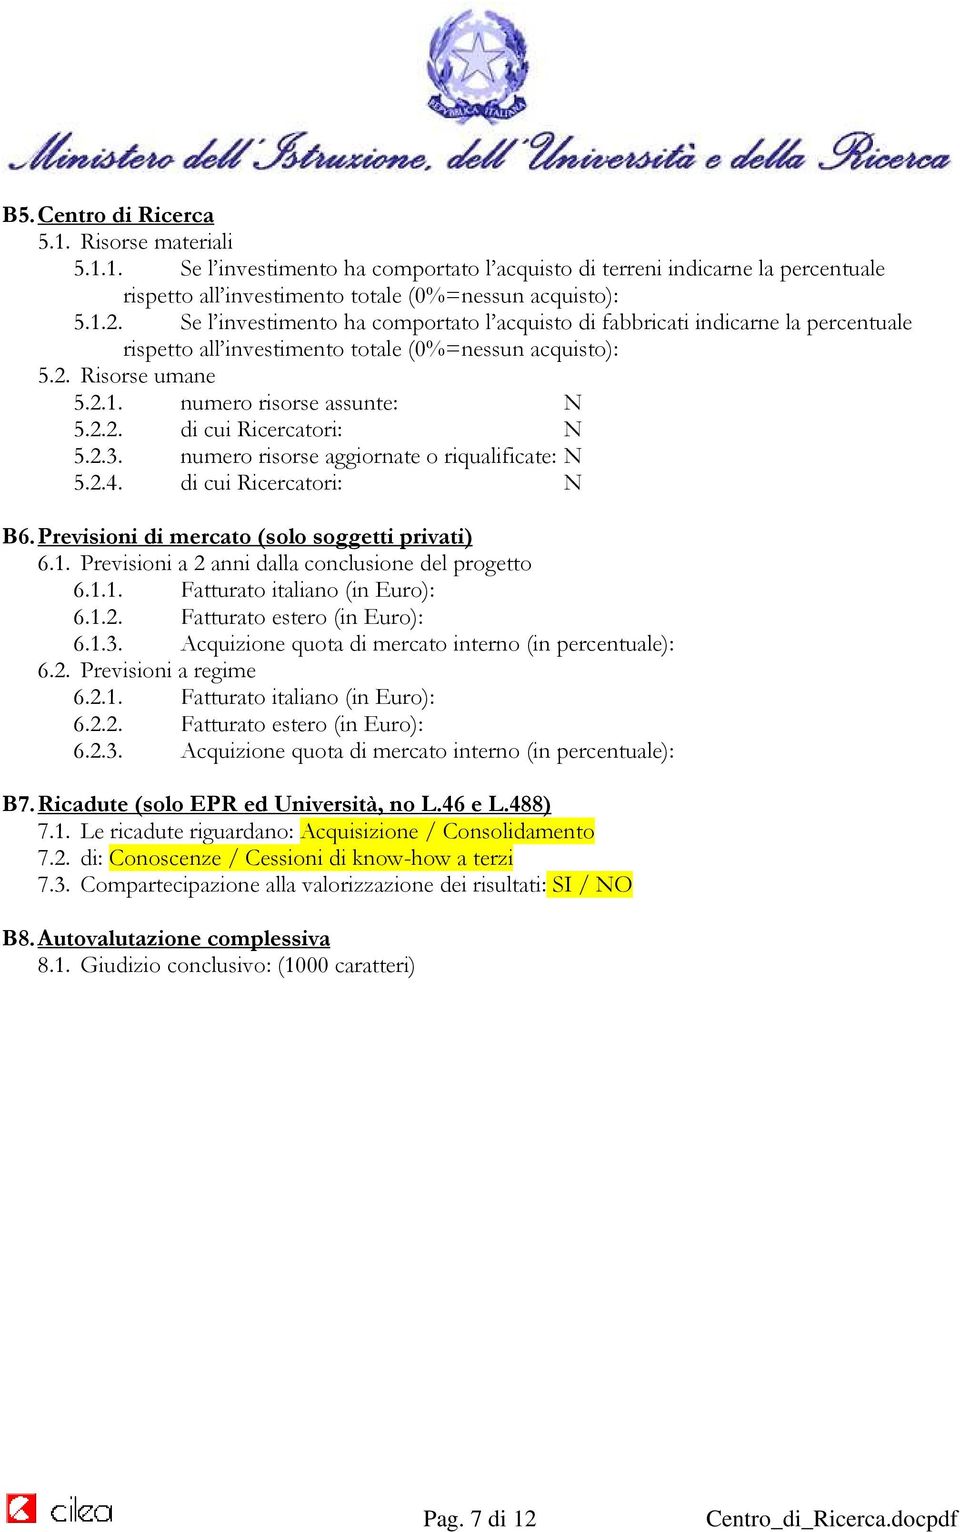 2.3. numero risorse aggiornate o riqualificate: N 5.2.4. di cui Ricercatori: N B6. Previsioni di mercato (solo soggetti privati) 6.1. Previsioni a 2 anni dalla conclusione del progetto 6.1.1. Fatturato italiano (in Euro): 6.